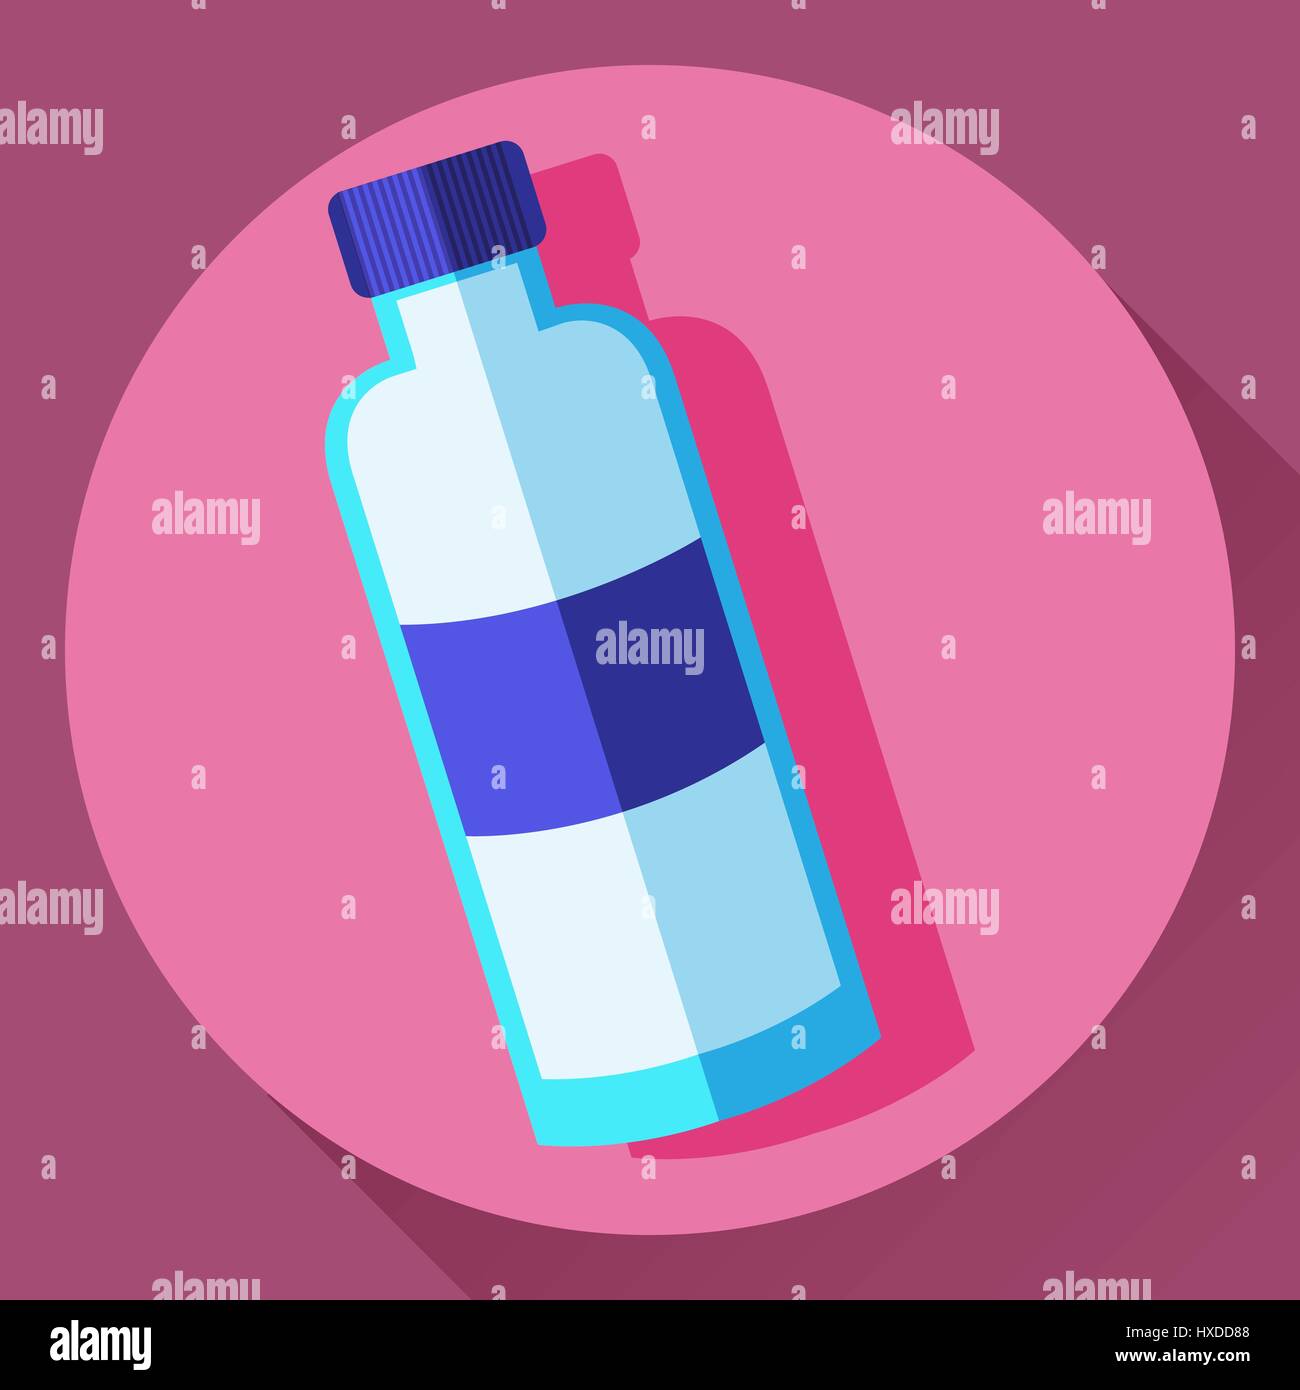 🚀 BOTELLA de agua con dibujos del ESPACIO 🚀 LIBRE BPA